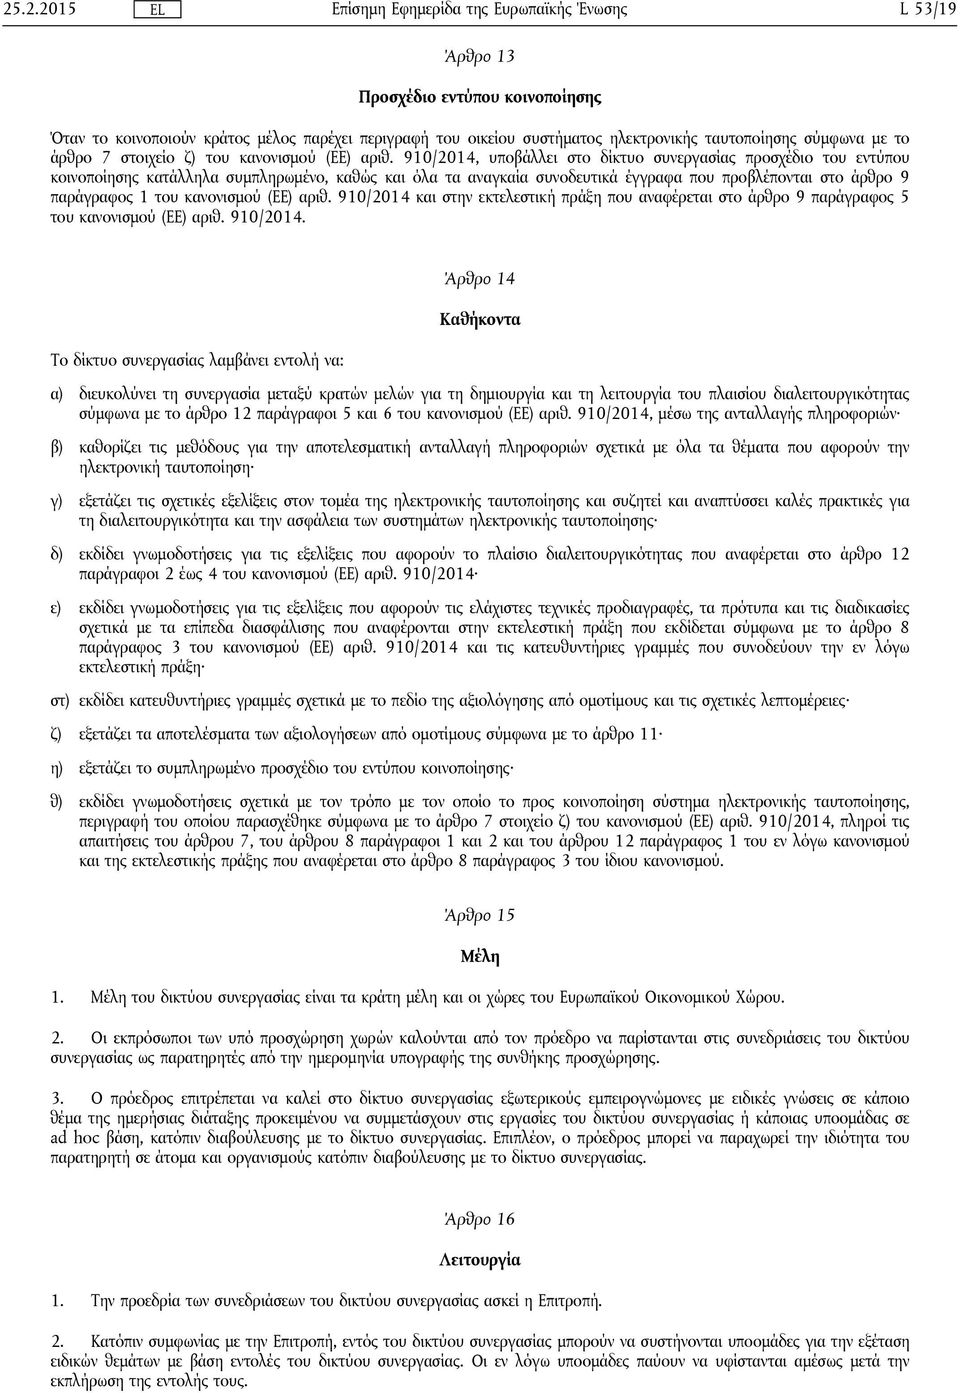 910/2014, υποβάλλει στο δίκτυο συνεργασίας προσχέδιο του εντύπου κοινοποίησης κατάλληλα συμπληρωμένο, καθώς και όλα τα αναγκαία συνοδευτικά έγγραφα που προβλέπονται στο άρθρο 9 παράγραφος 1 του